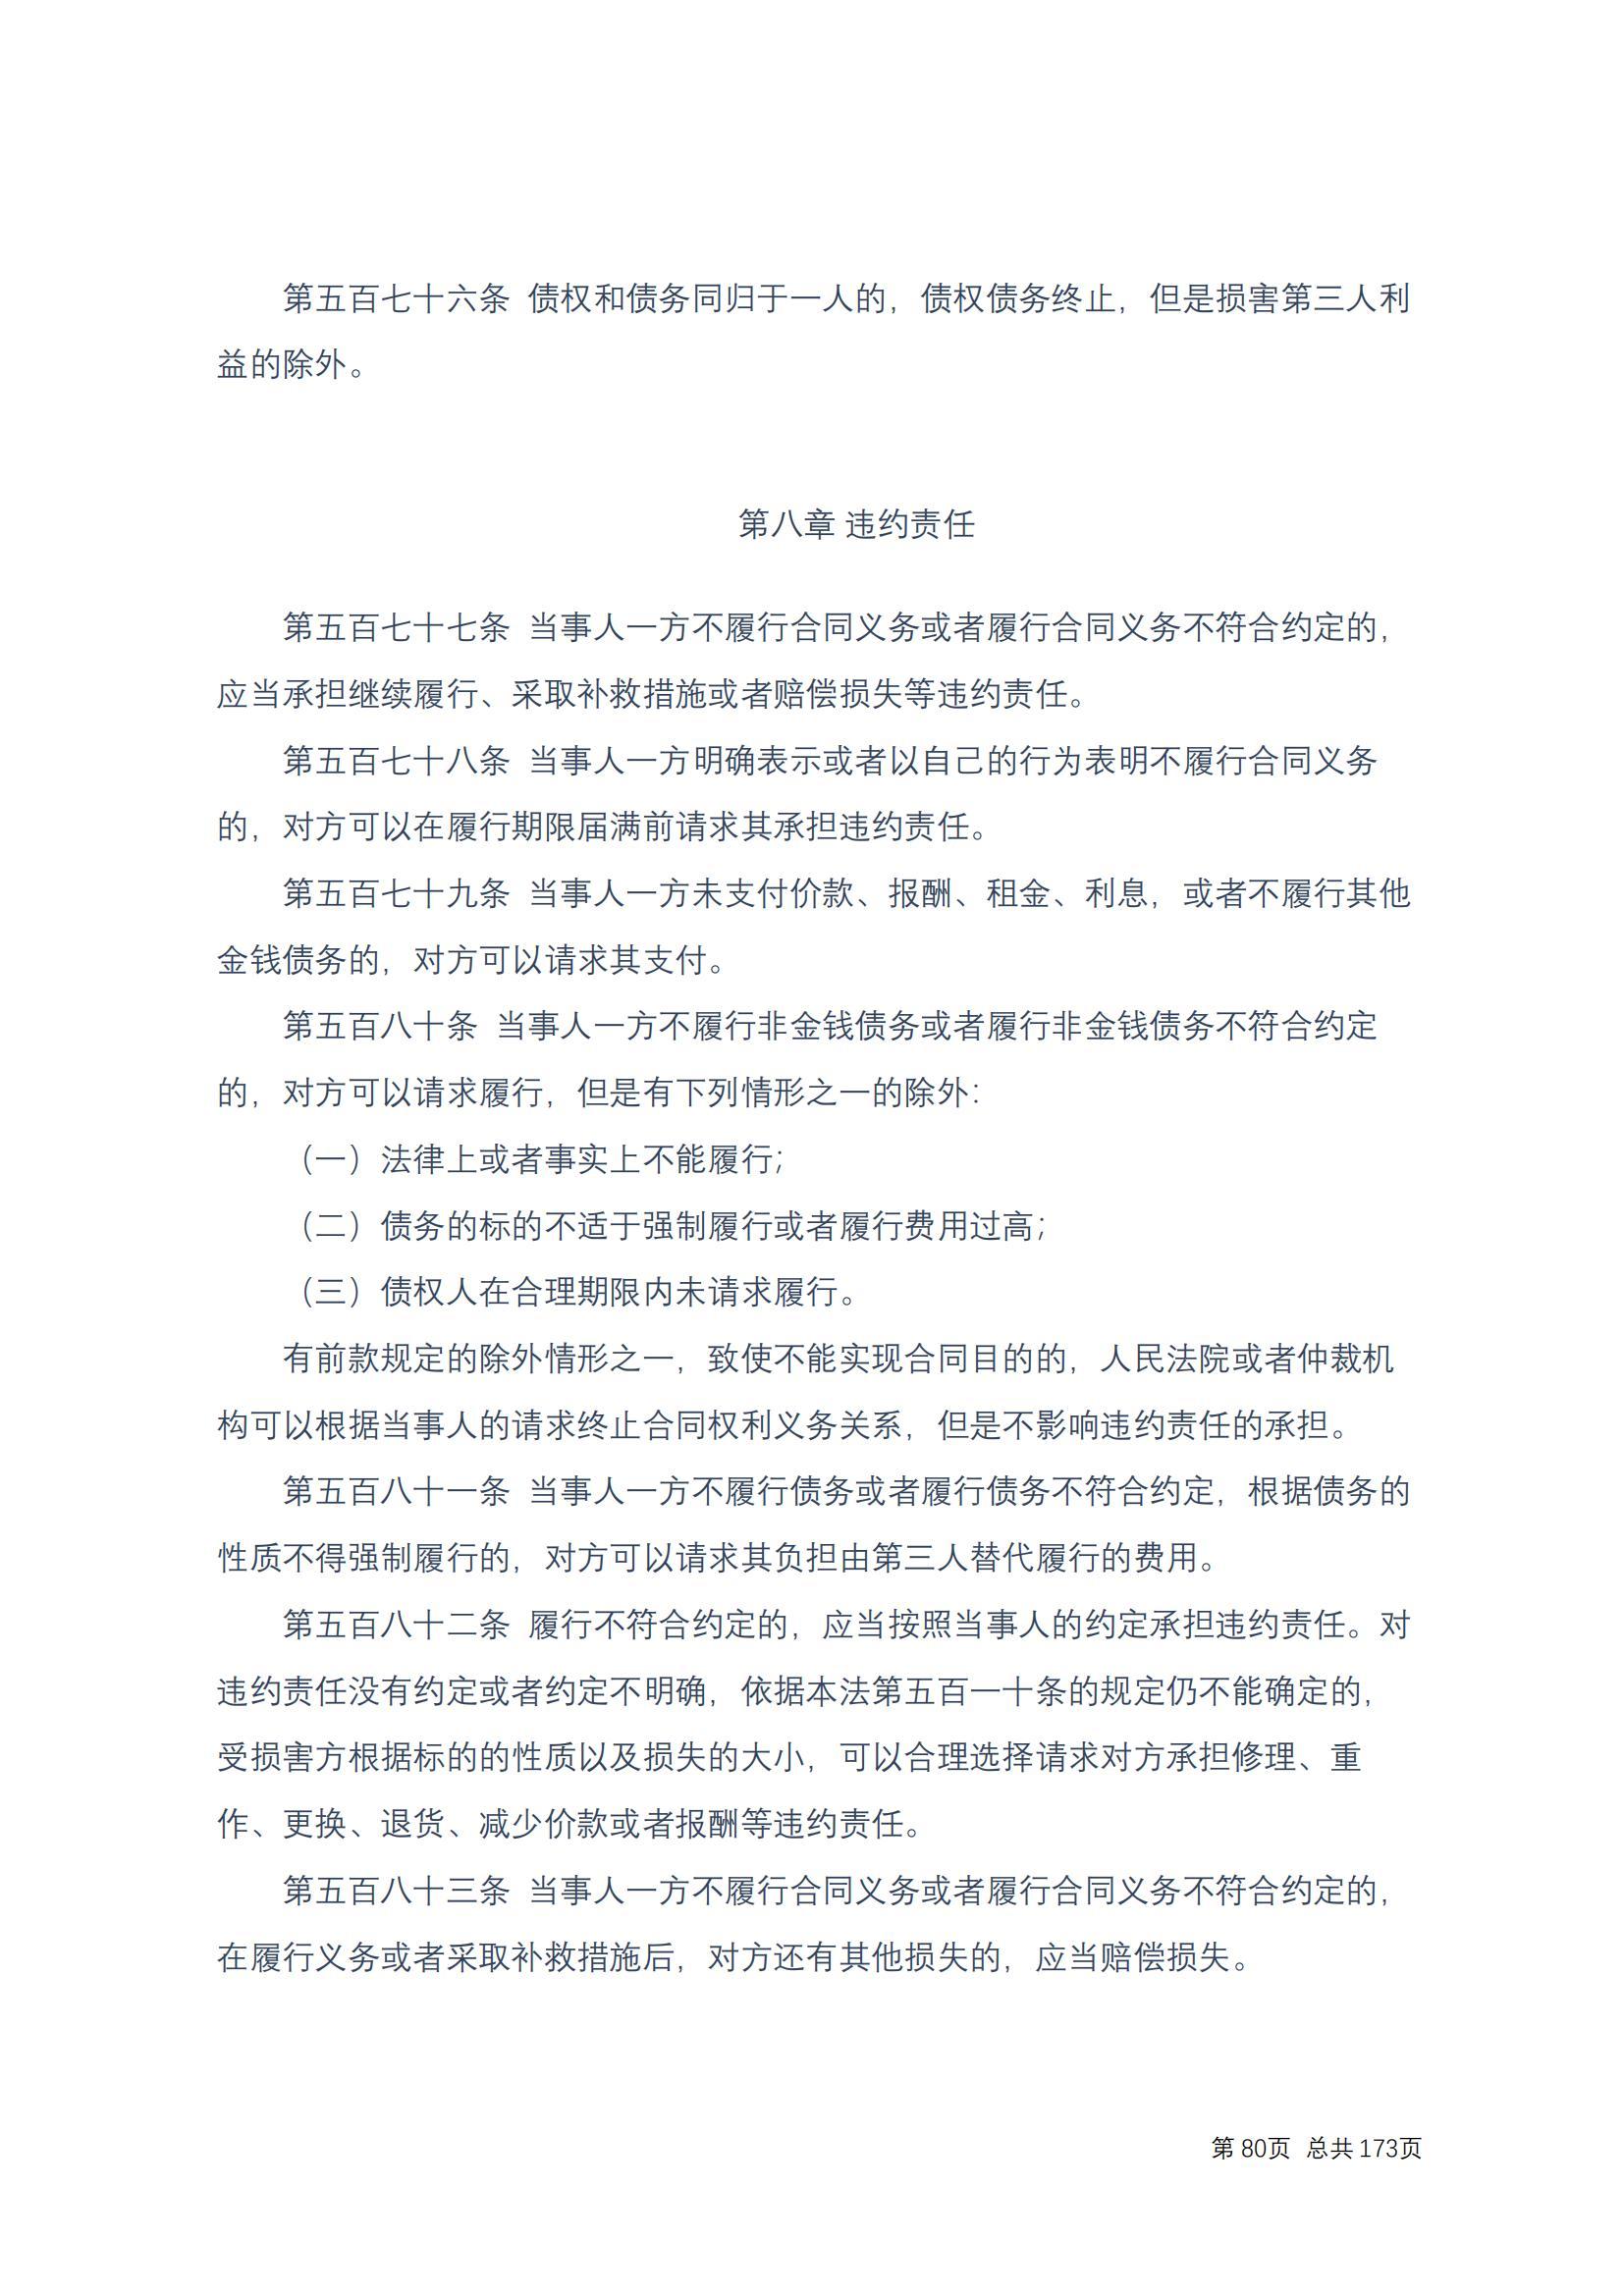 中华人民共和国民法典 修改过_79